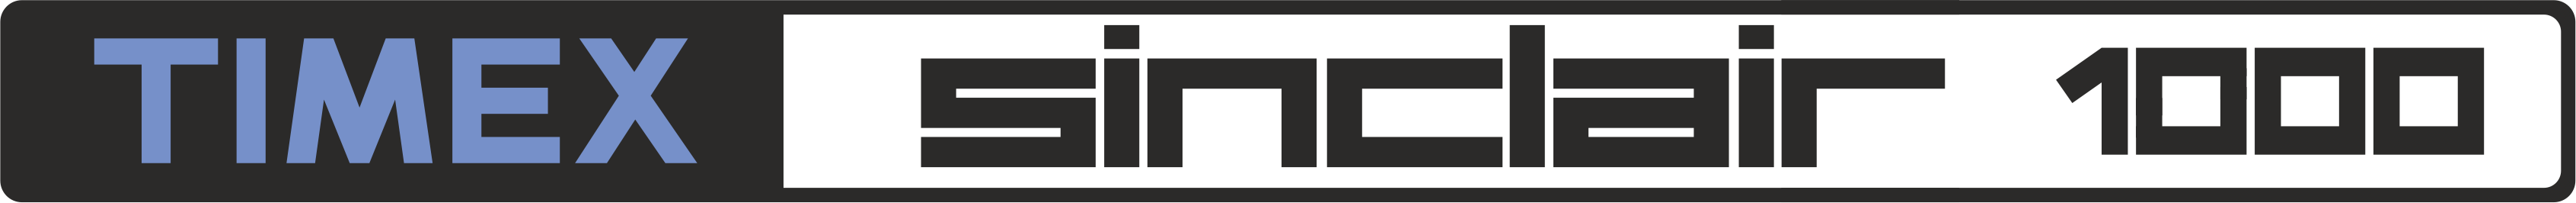 Timex Sinclair TS-1000: logo